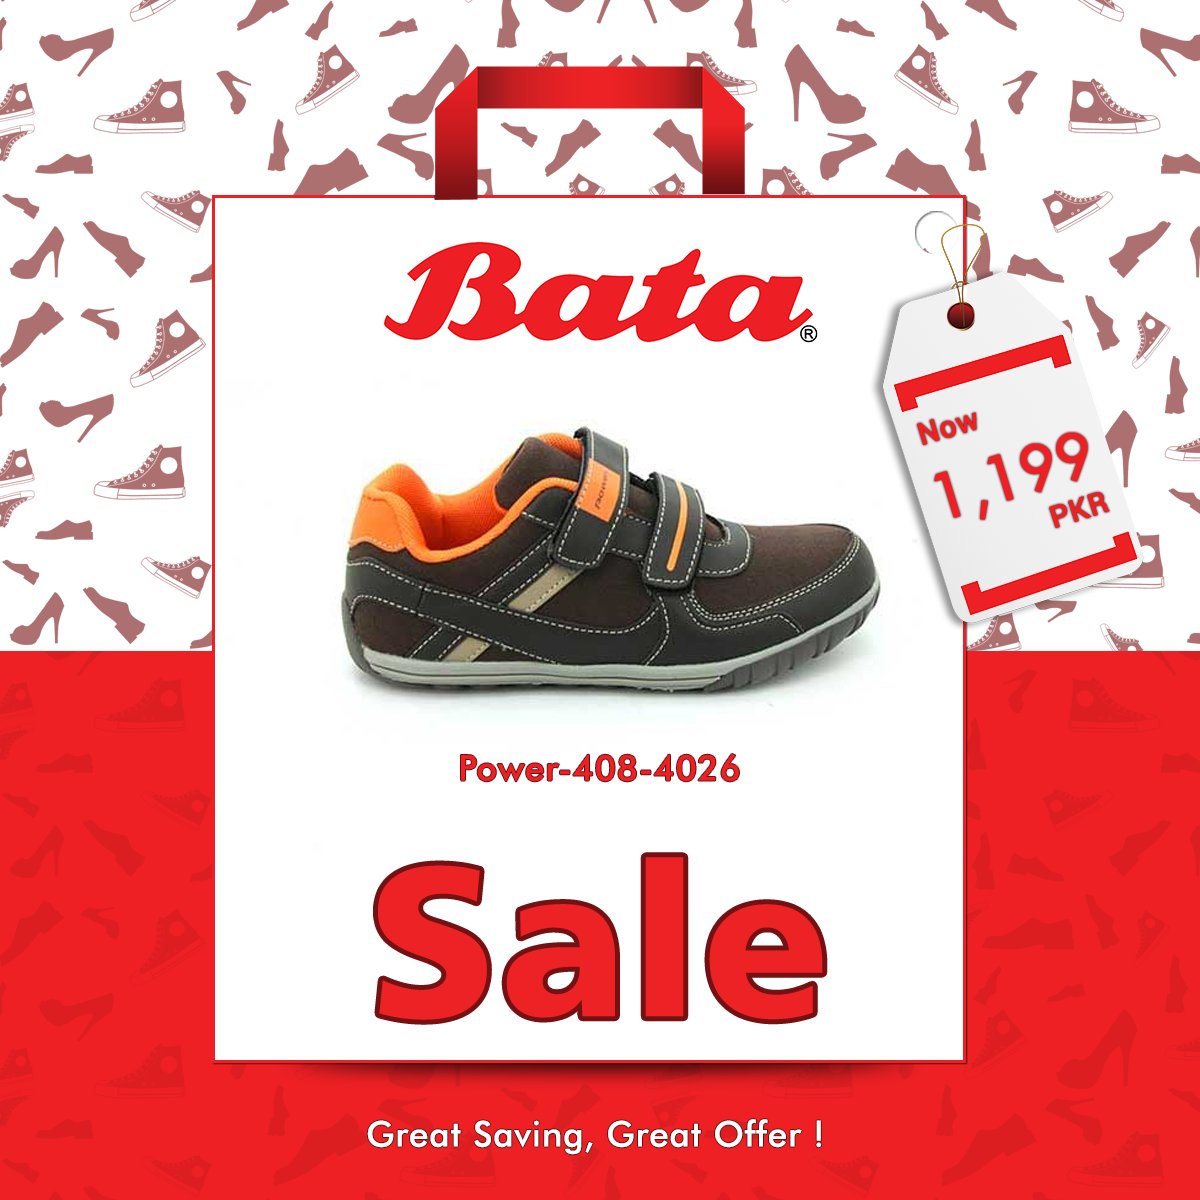 bata shoes discount sale cheap online